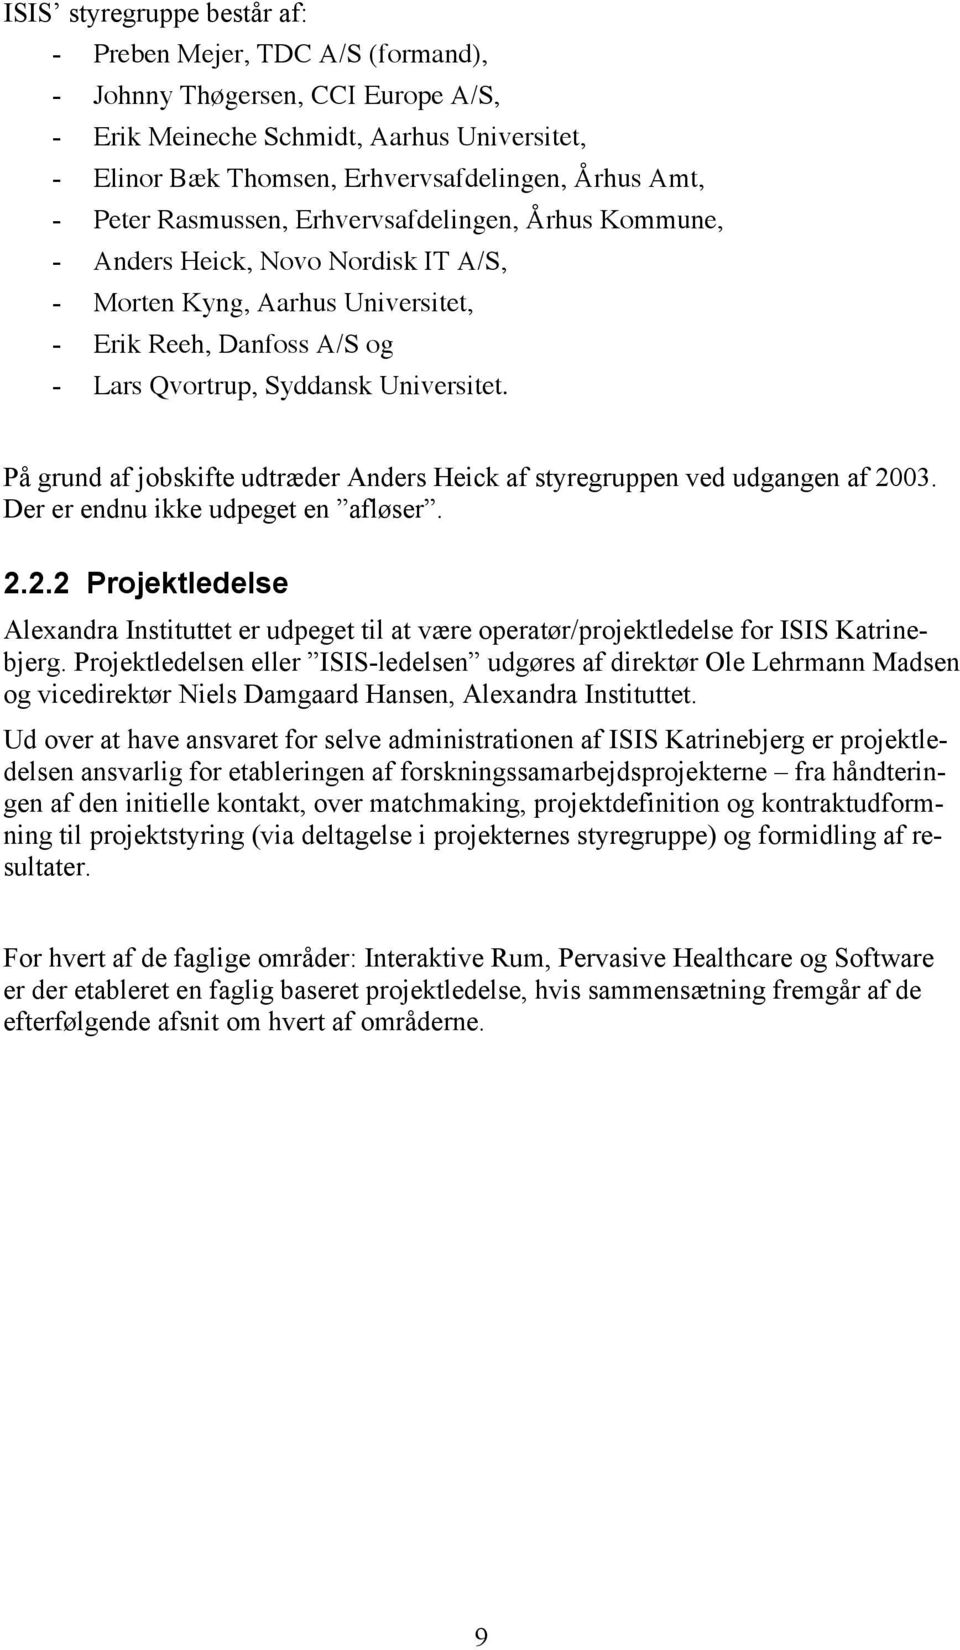 På grund af jobskifte udtræder Anders Heick af styregruppen ved udgangen af 2003. Der er endnu ikke udpeget en afløser. 2.2.2 Projektledelse Alexandra Instituttet er udpeget til at være operatør/projektledelse for ISIS Katrinebjerg.